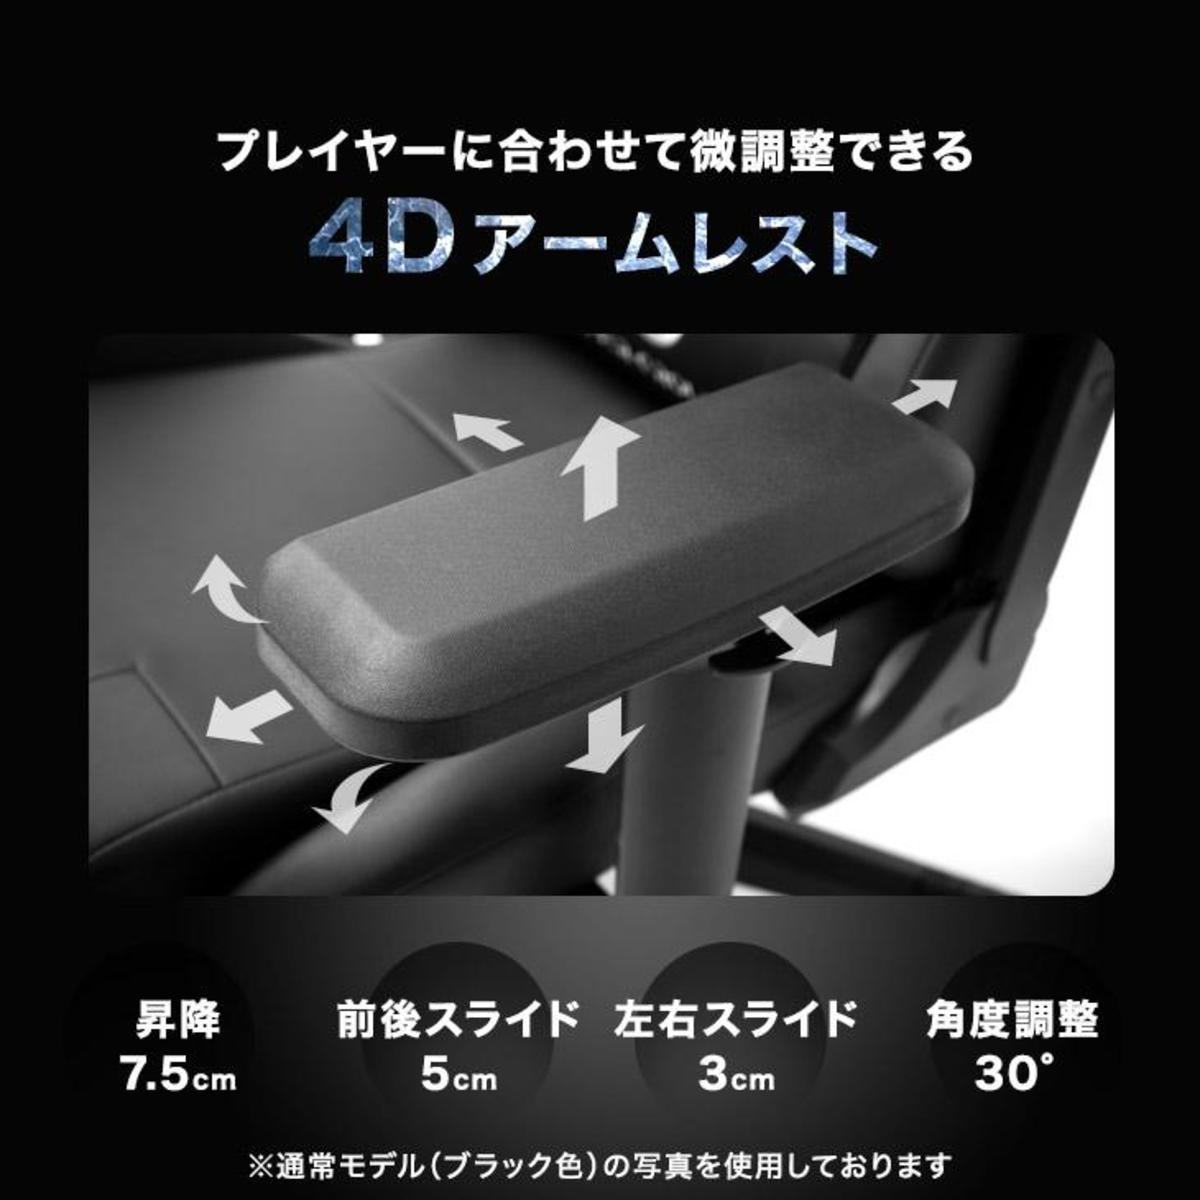 3D移動的4D扶手